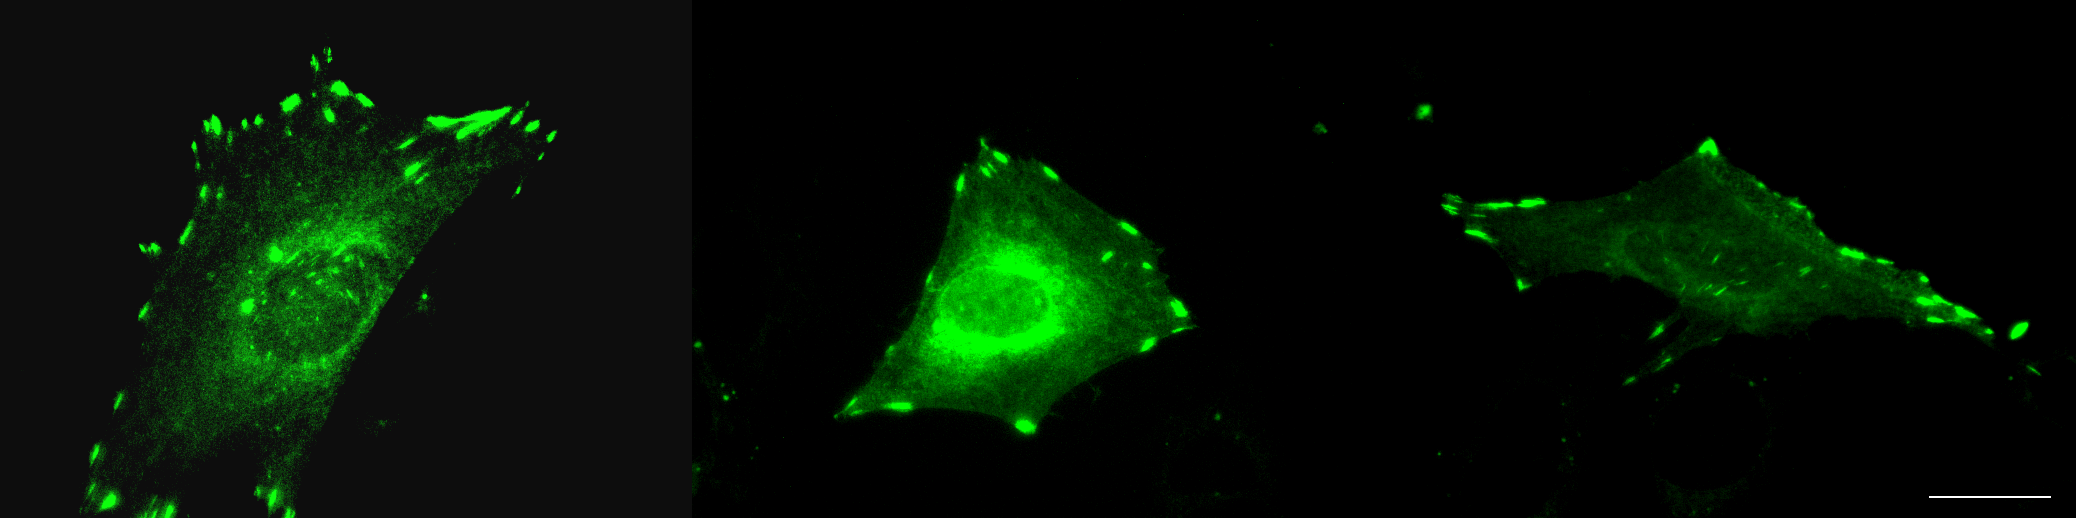 31 Kuva 13. αiib-gfp:n lokalisaatio tarttumisrakenteisiin SAOS-soluissa vitronektiinillä päällystetyillä peitinlaseilla 24 tunnin tarttumisen jälkeen. Kuvat Heikki Takala. Mittajana 10 μm. 6.